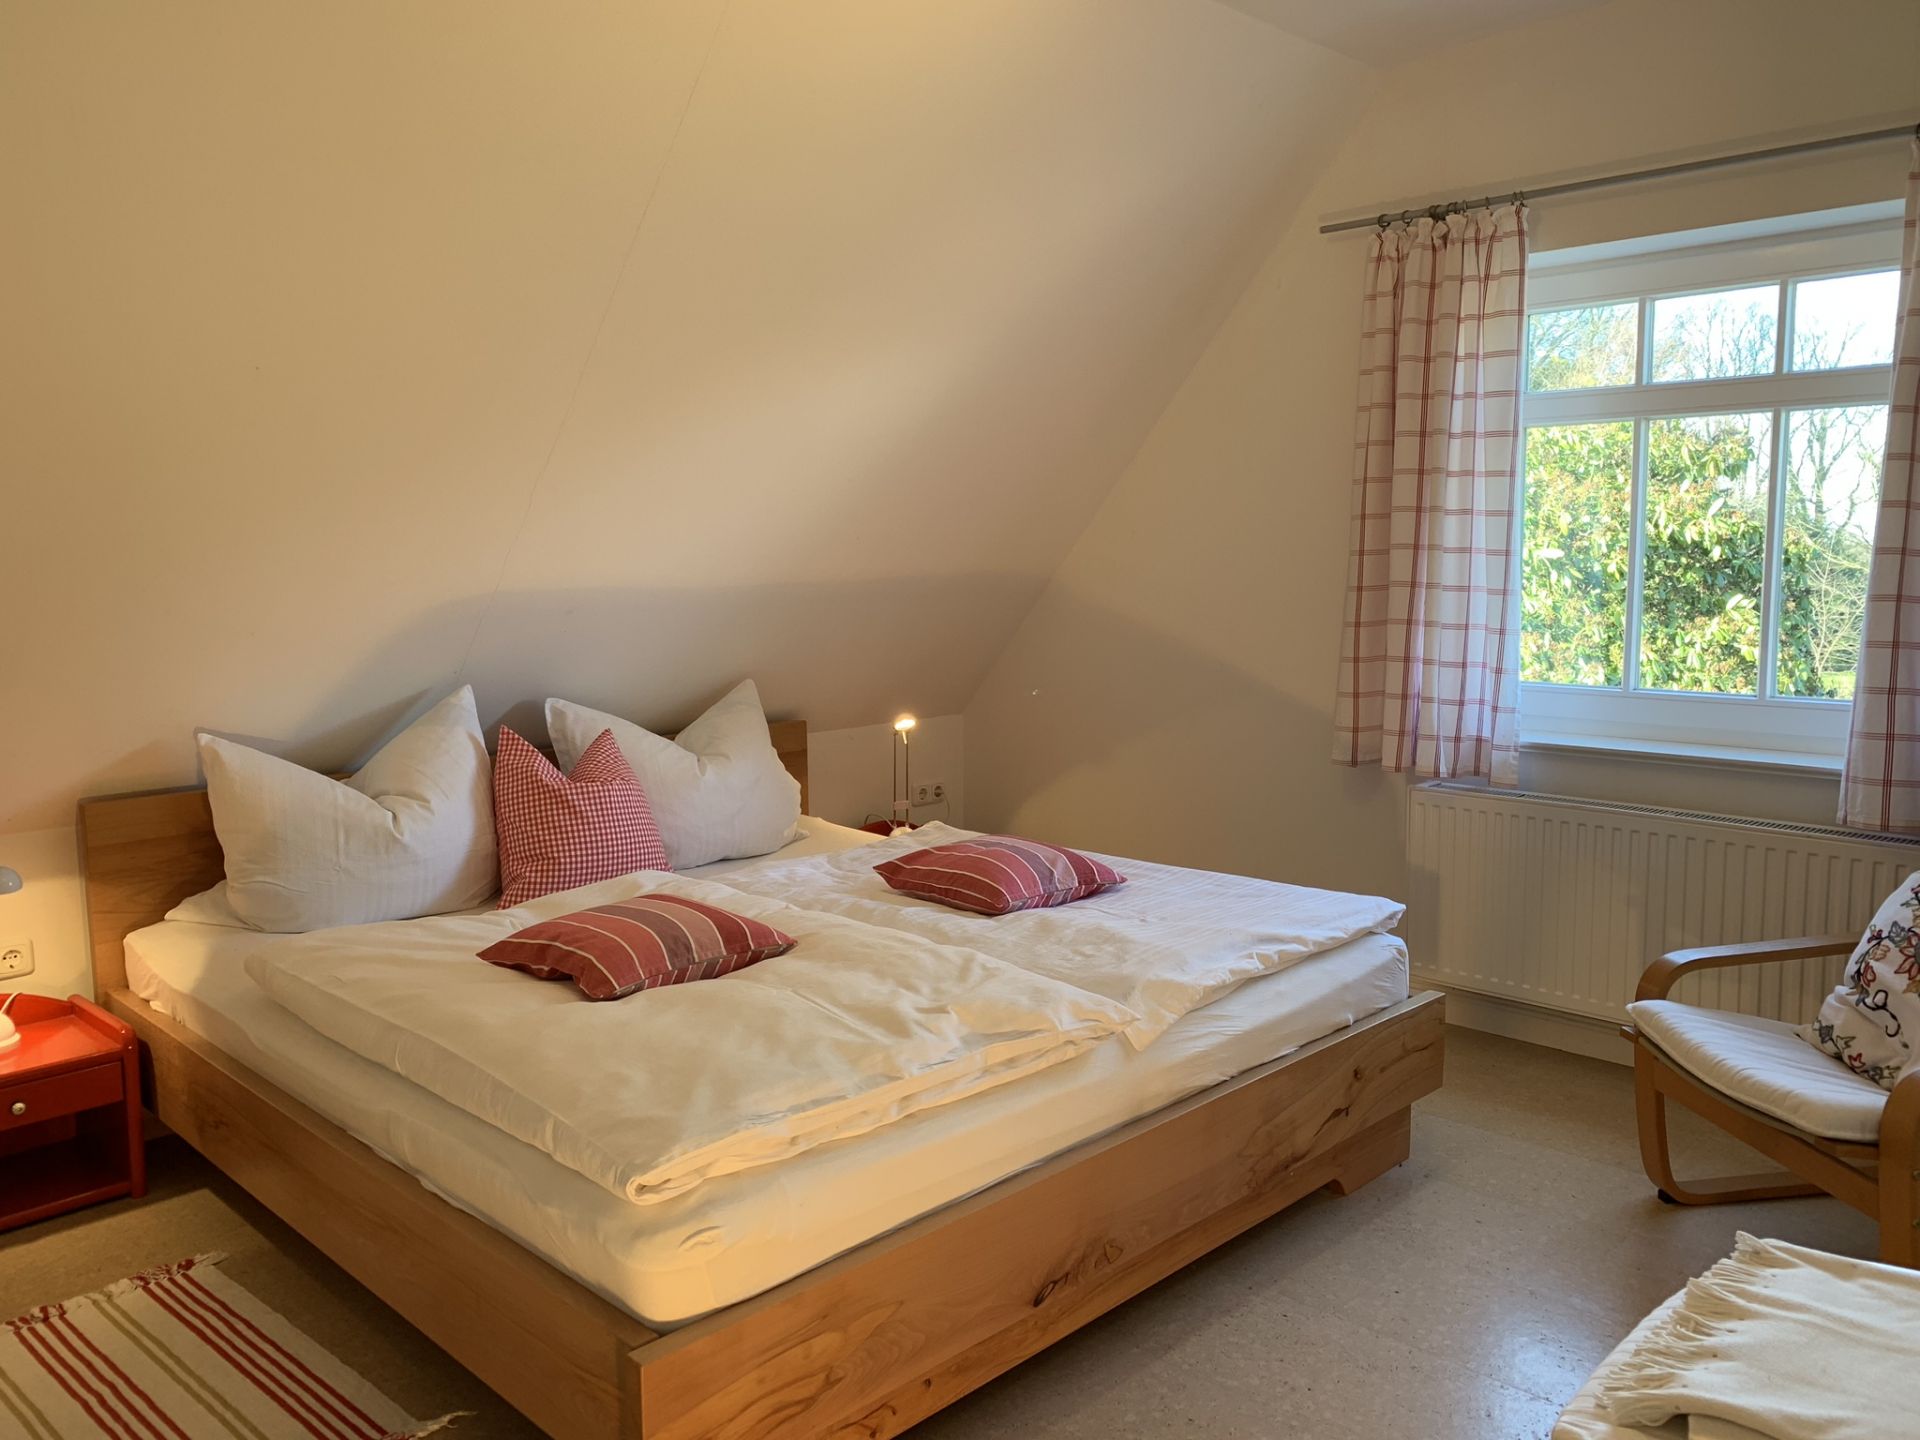 Doppelbett in einem Schlafzimmer in einer Ferienunterkunft im Nordseebad Dangast